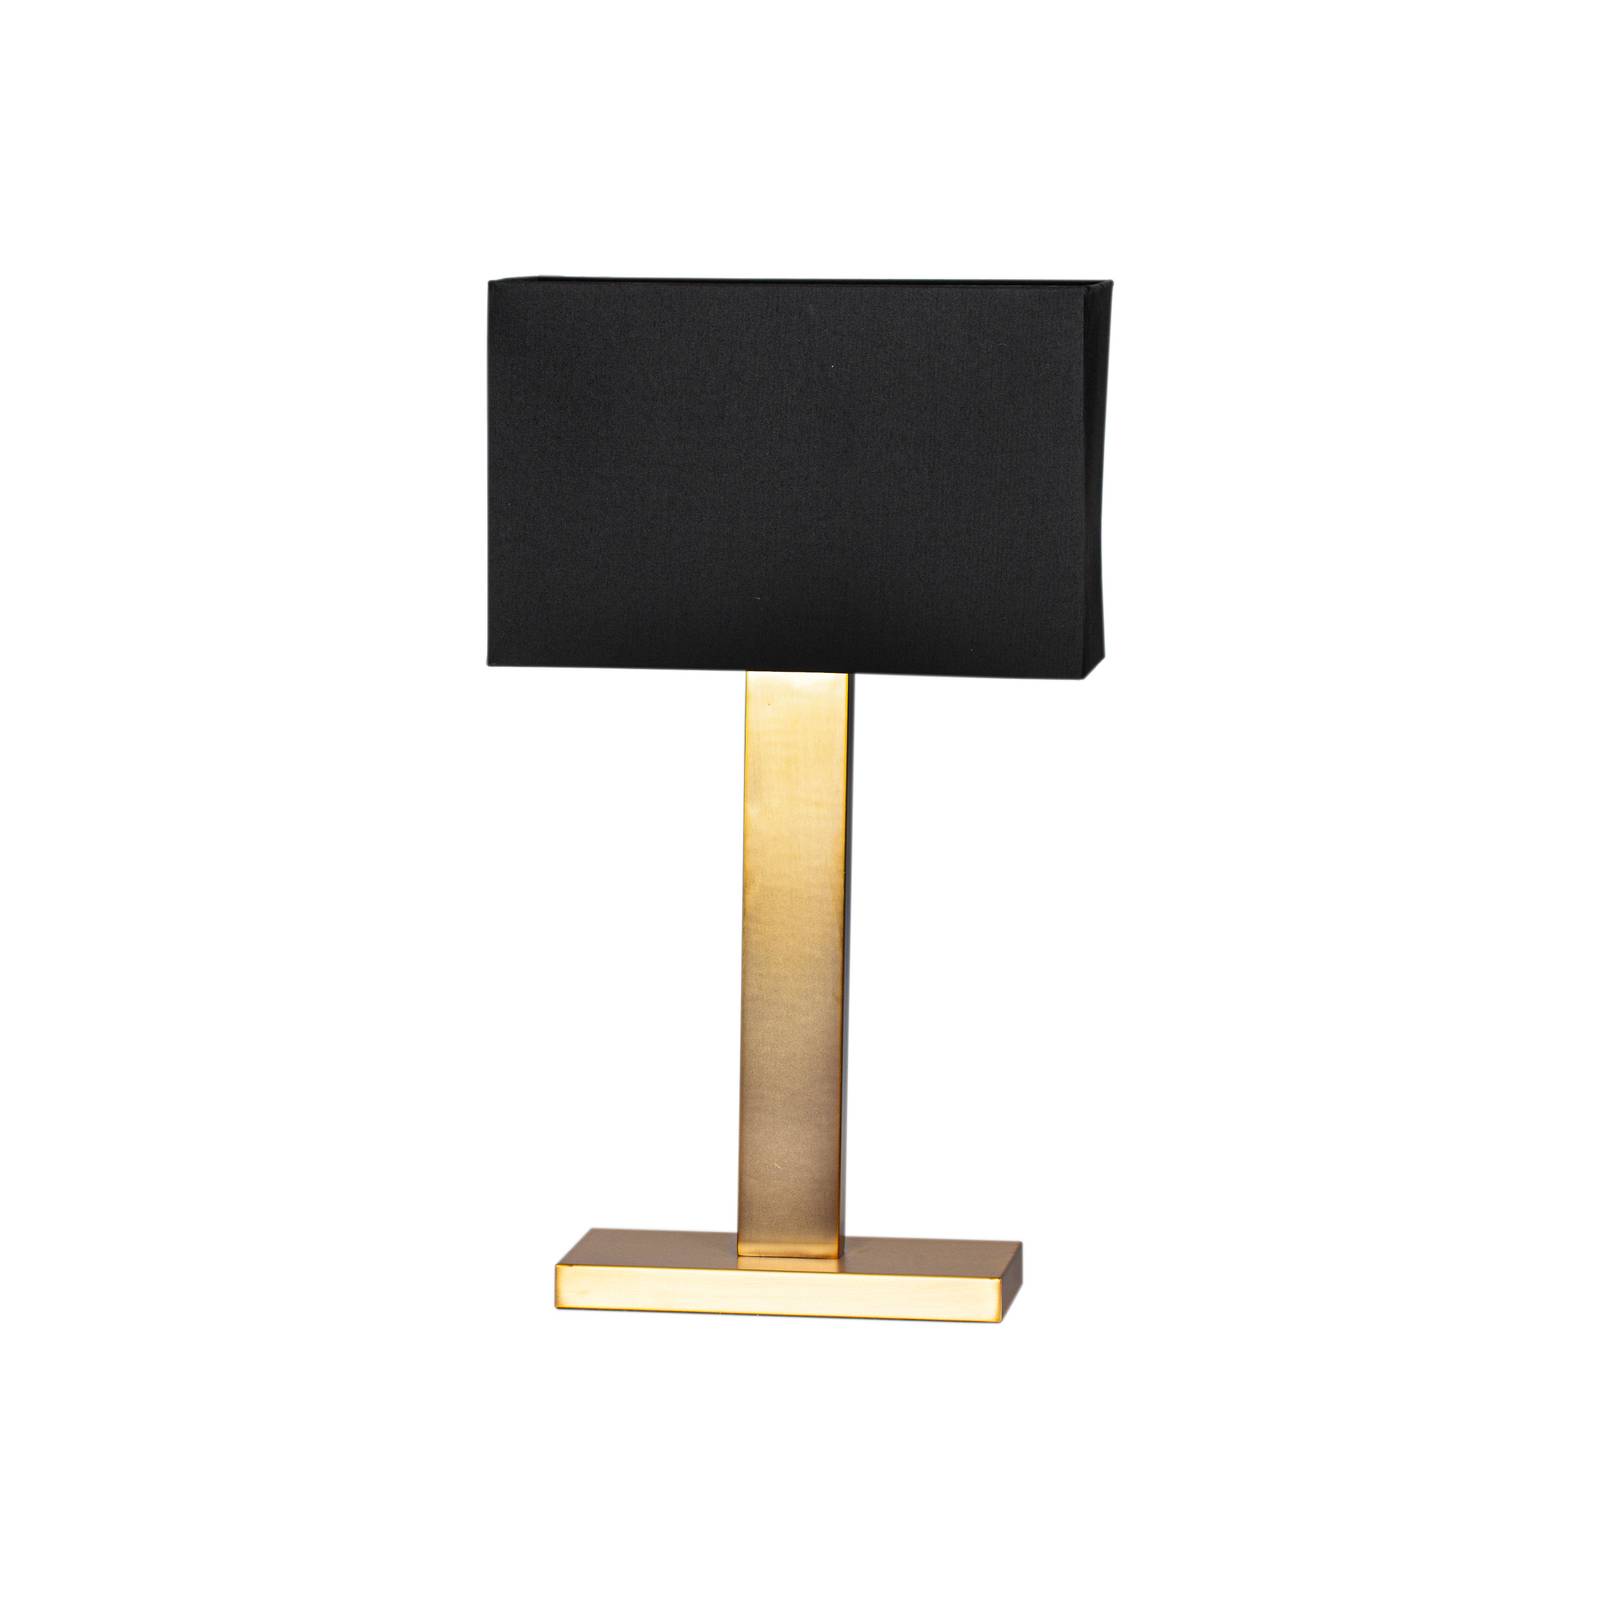 By rydéns rydéns prime asztali lámpa magasság 69 cm arany/fekete